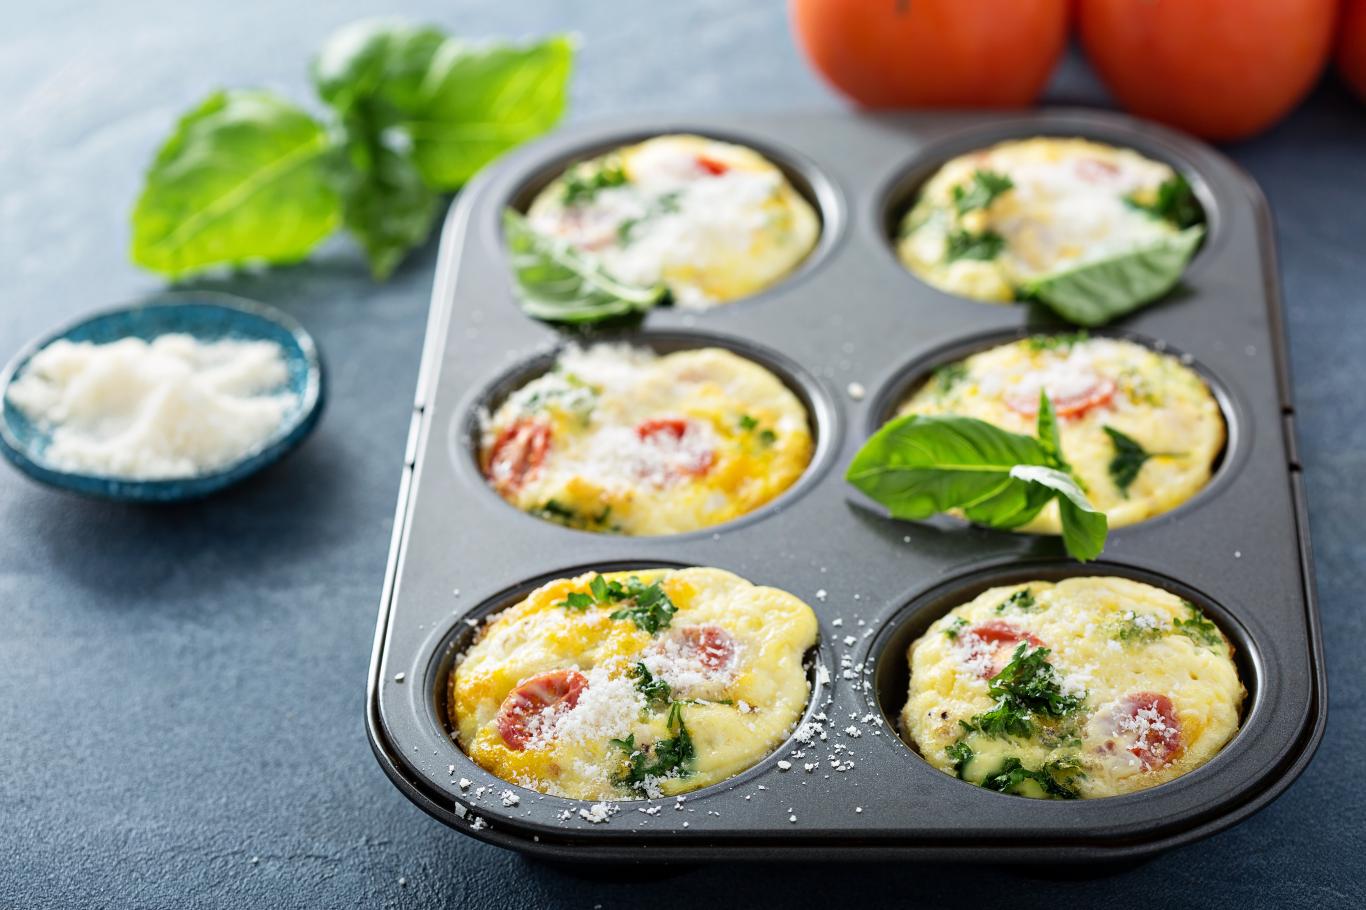 cette recette va vous permettre de faire un petit déjeuner équilibré et rassasiant avec un simple moule à muffins !